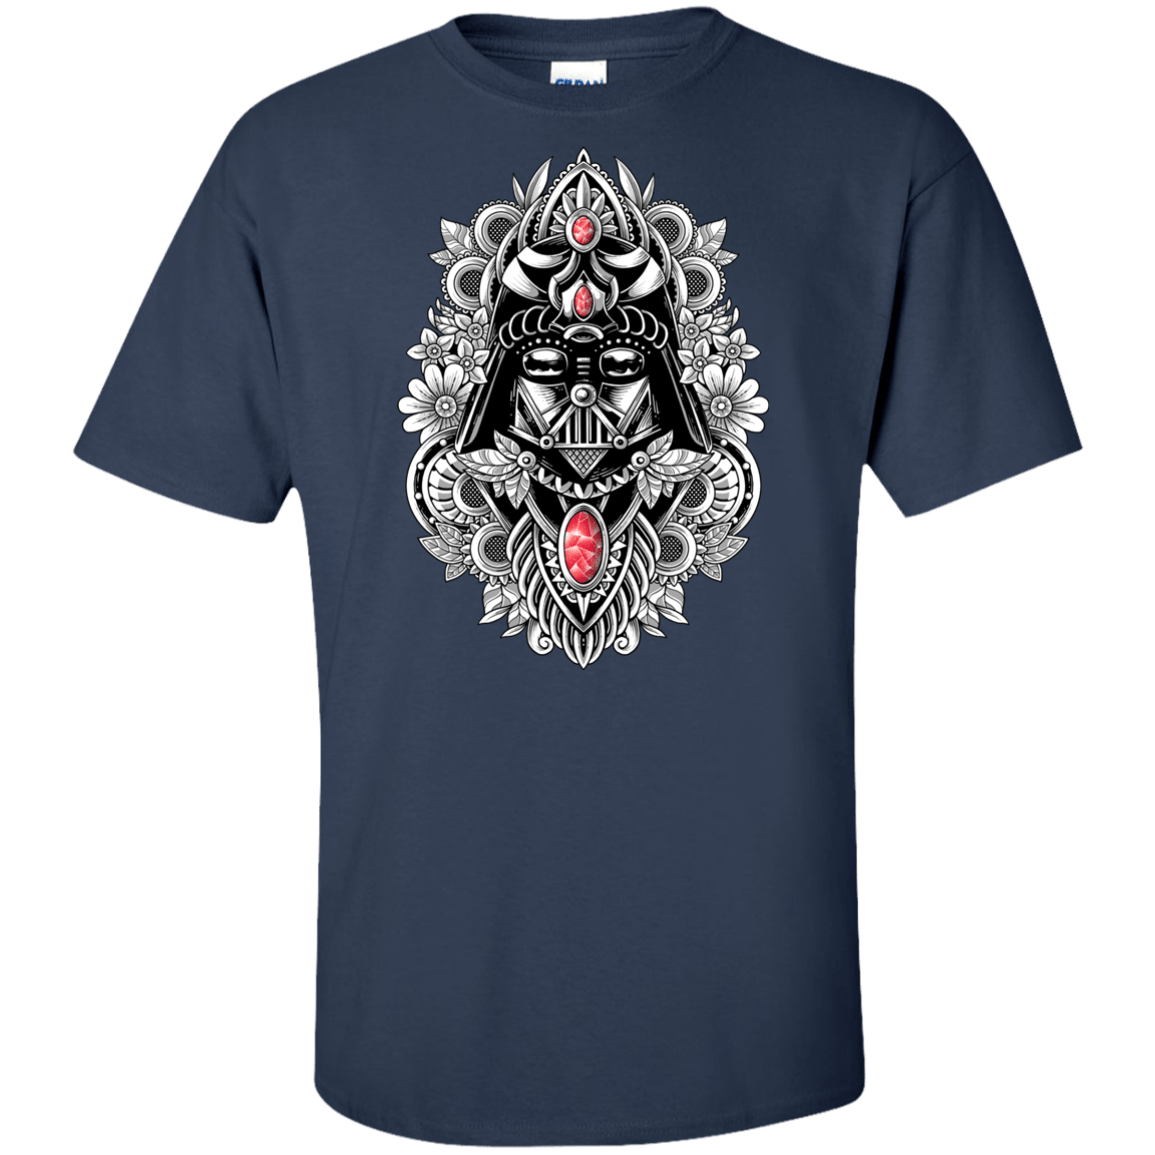 T-Shirts Navy / XLT Dark Spirit Tall T-Shirt